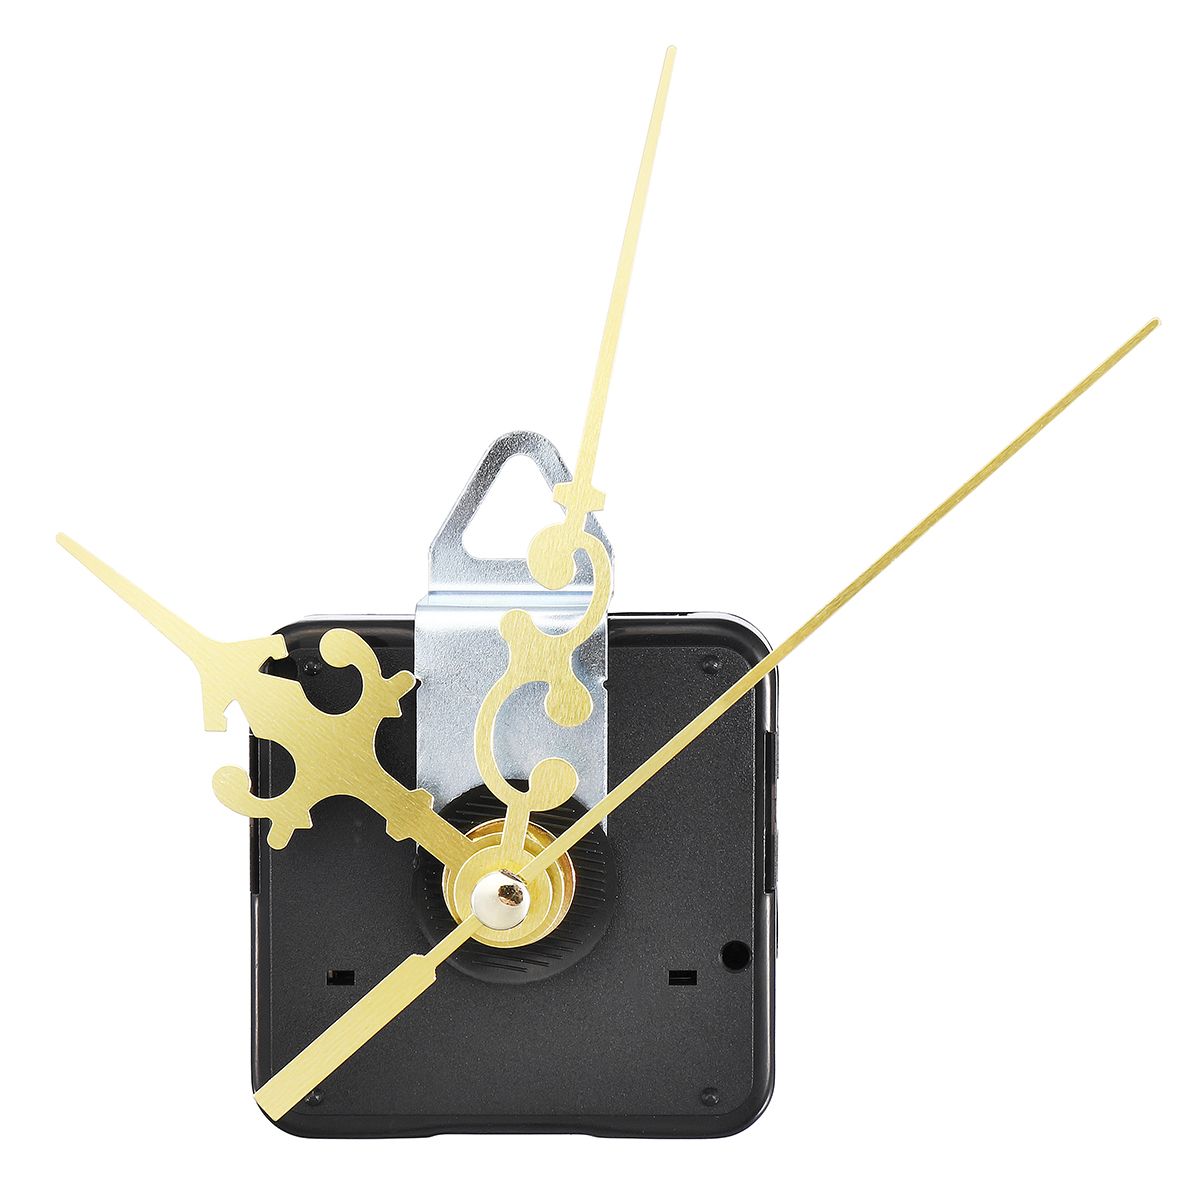 12mm-GoldBlack-Quartz-Silent-Clock-Movement-Mechanism-Module-DIY-Kit-Hour-Minute-Second-without-Bat-1333712